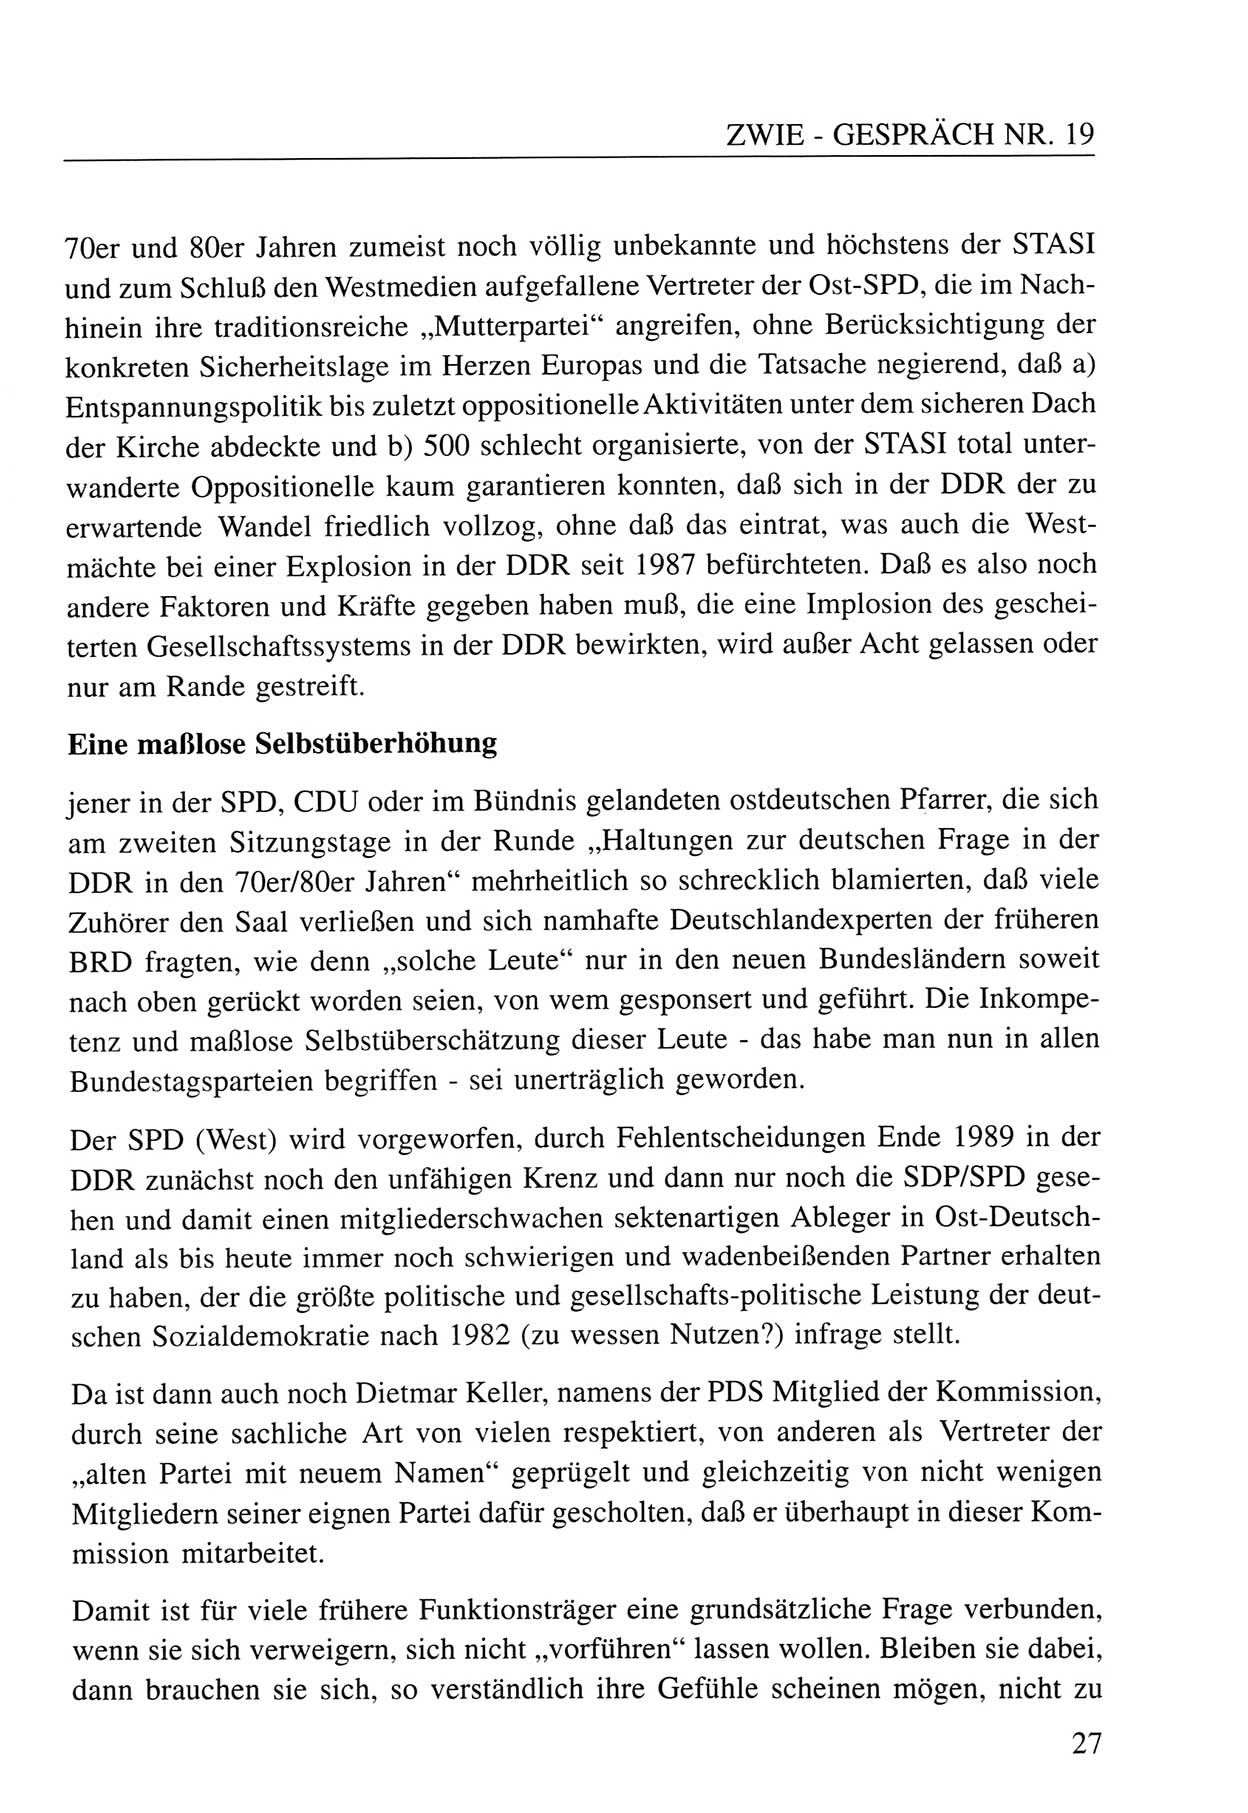 Zwie-Gespräch, Beiträge zum Umgang mit der Staatssicherheits-Vergangenheit [Deutsche Demokratische Republik (DDR)], Ausgabe Nr. 19, Berlin 1994, Seite 27 (Zwie-Gespr. Ausg. 19 1994, S. 27)